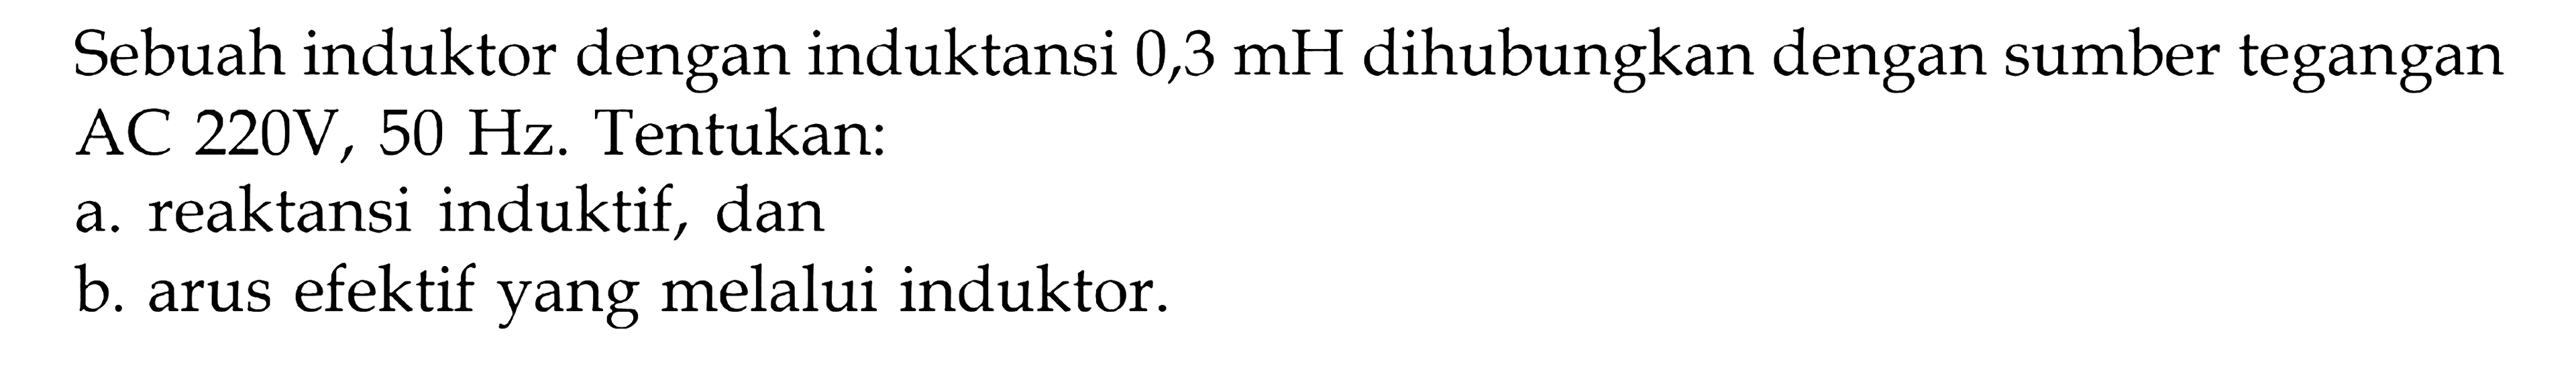 Sebuah induktor dengan induktansi 0,3 mH dihubungkan dengan sumber tegangan AC 220V, 50 Hz. Tentukan: a. reaktansi induktif, dan b arus efektif yang melalui induktor.